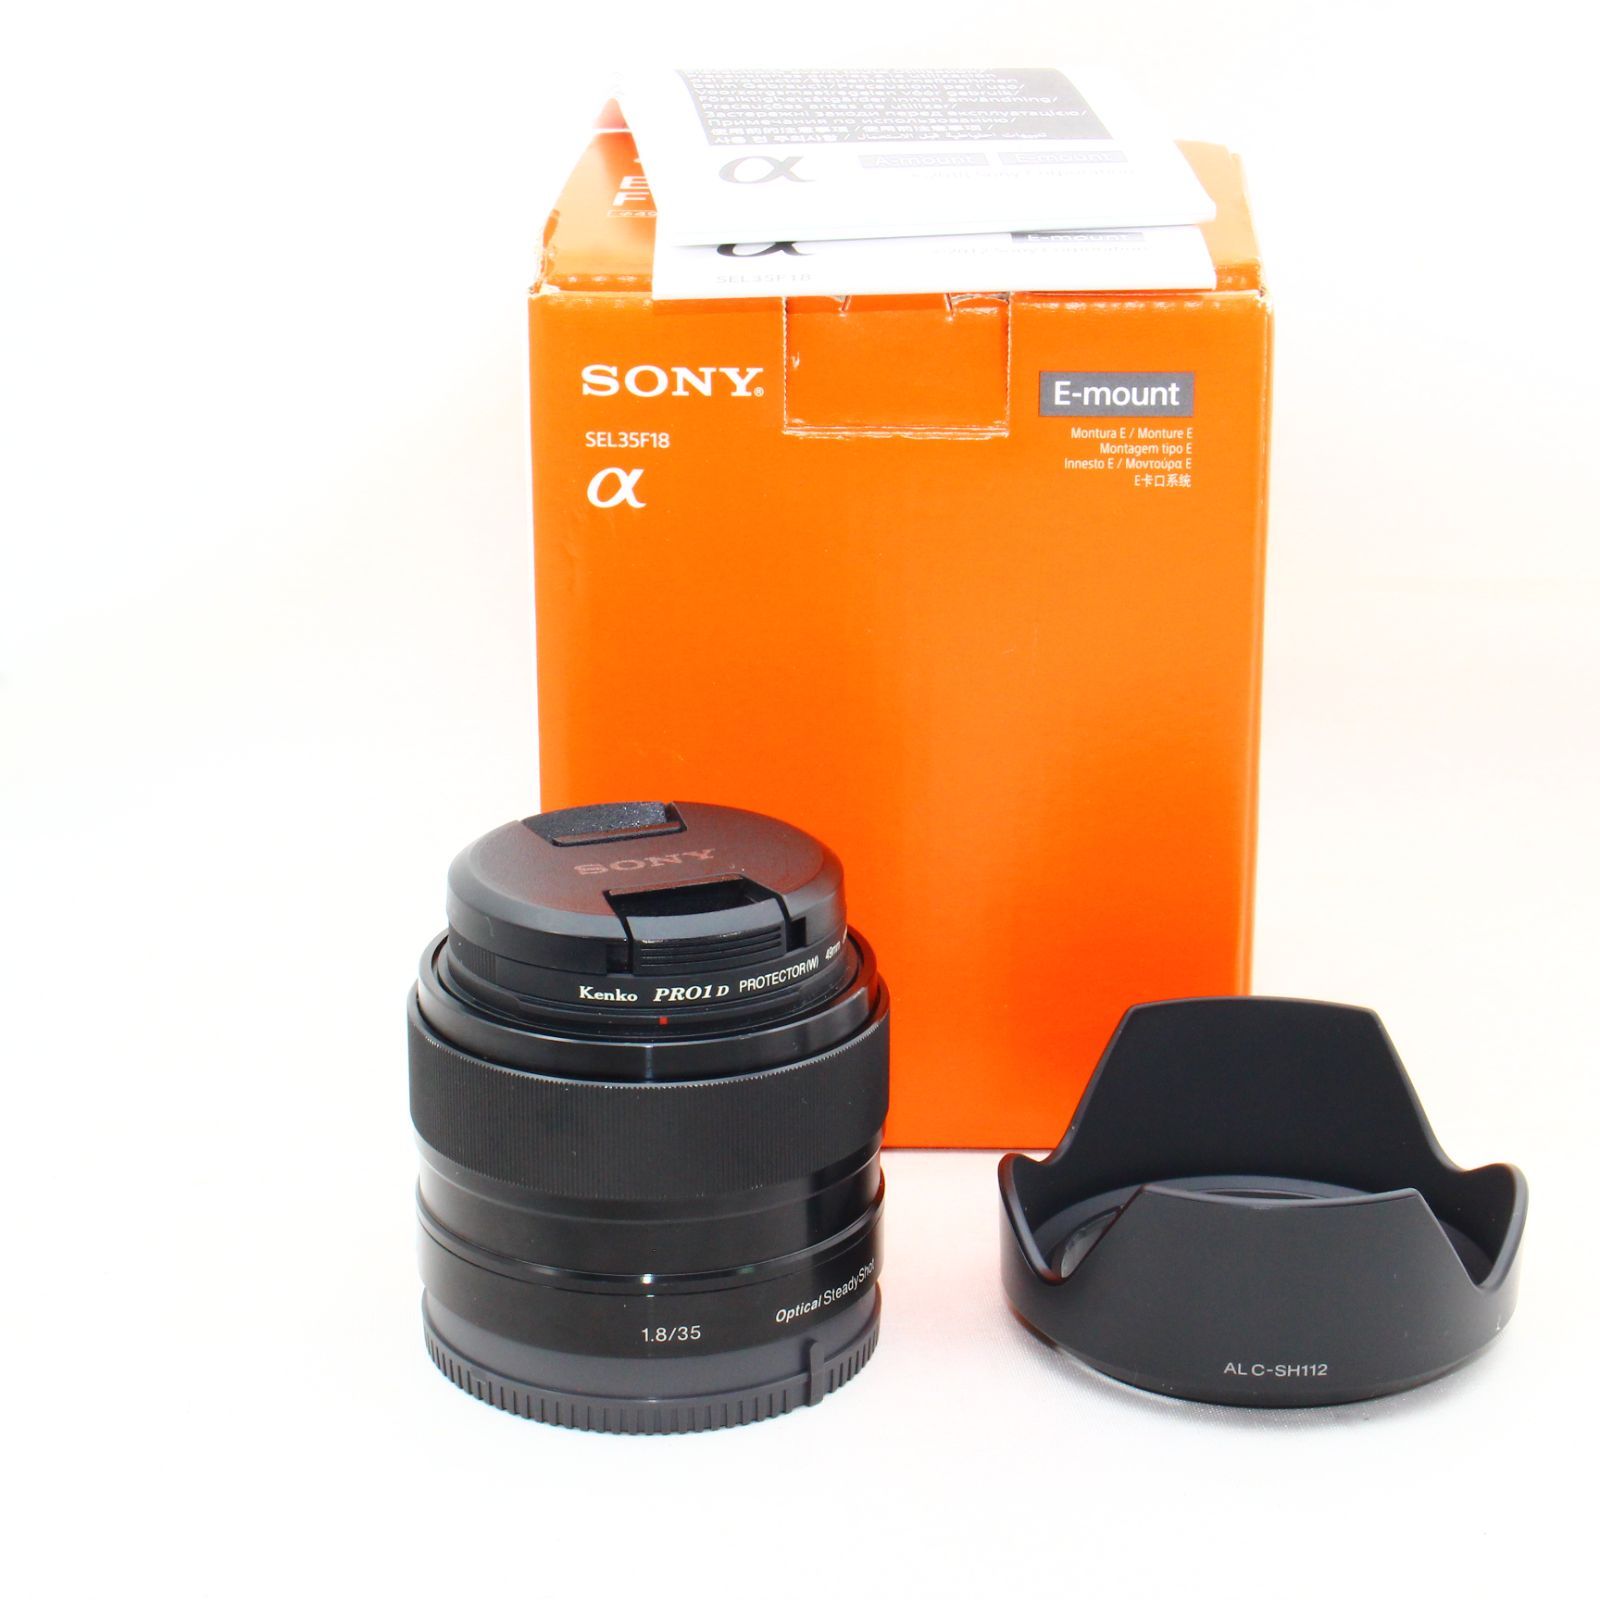 SONY 単焦点レンズ SEL35F18 OSS